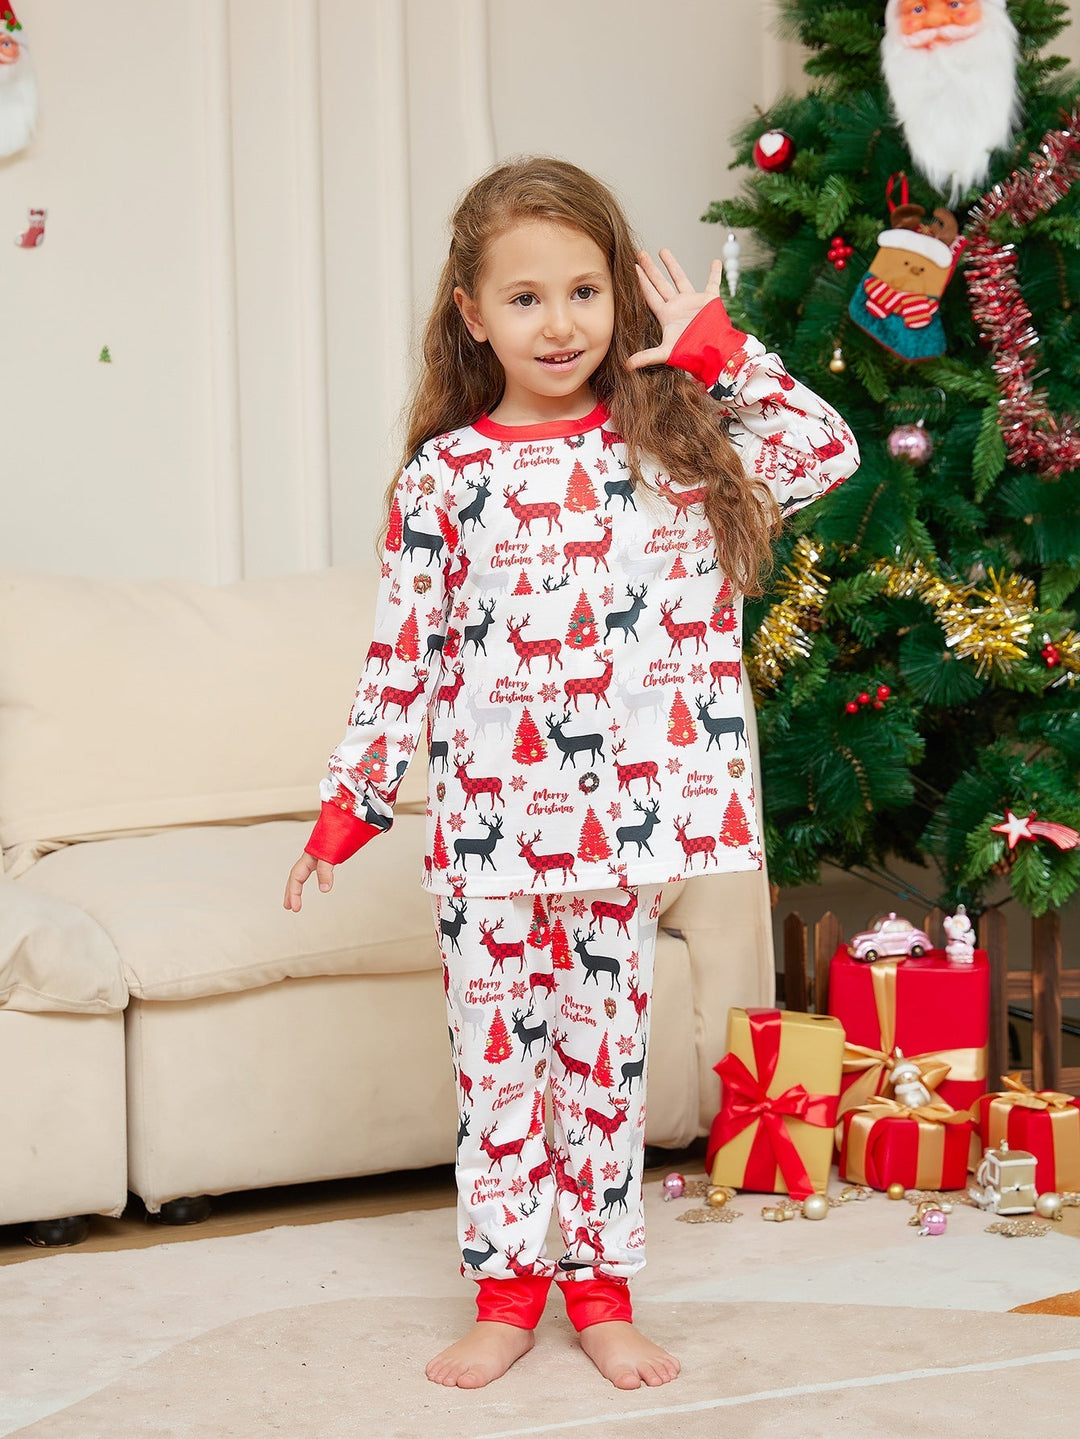 Conjuntos de pijamas familiares con estampado de ciervos navideños (con mascotas)